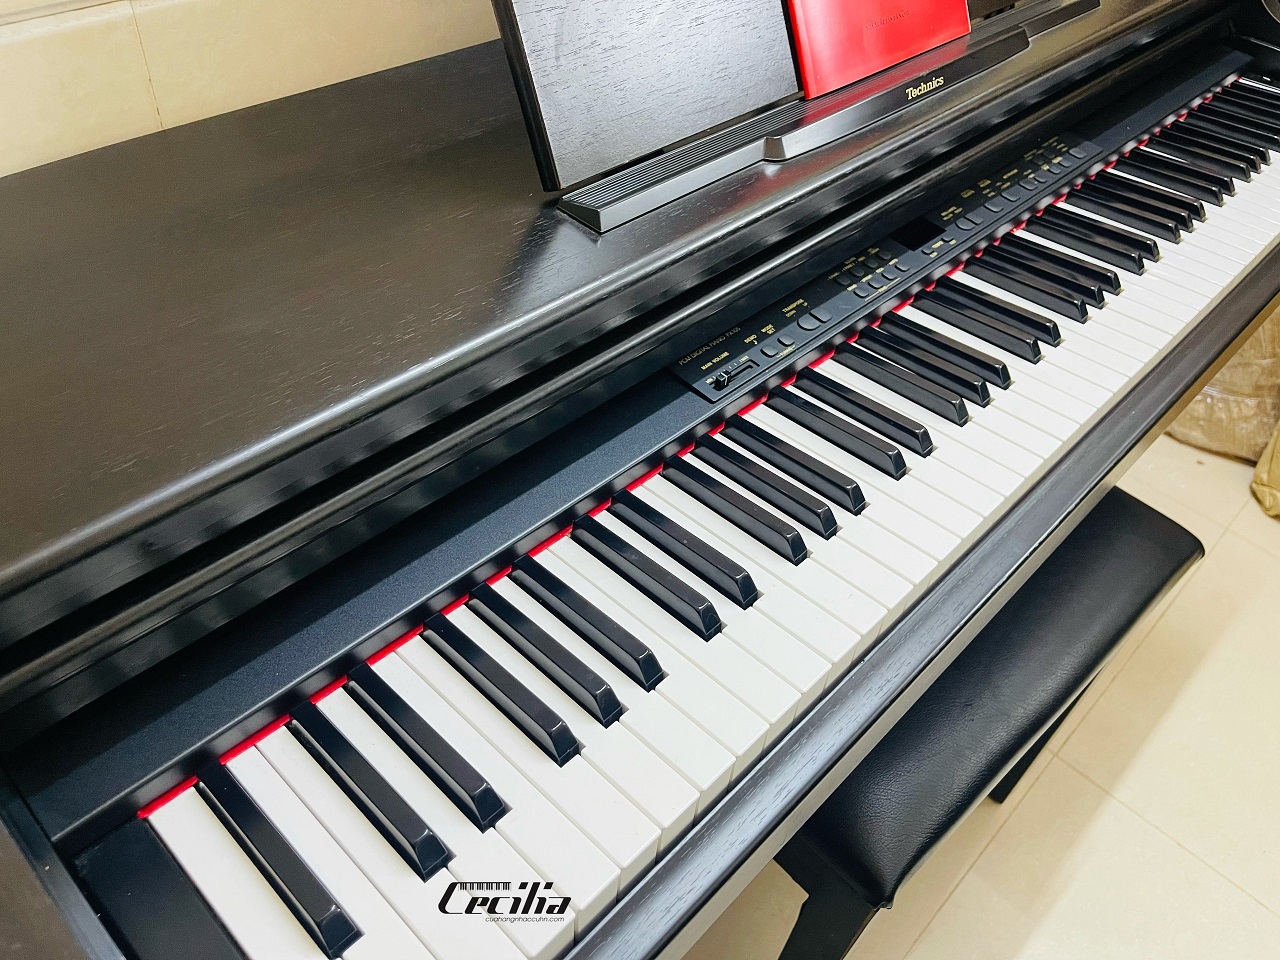 Techics(テクニクス) 88鍵盤 電子ピアノ SX-PX73 イス付き - 鍵盤楽器 ...